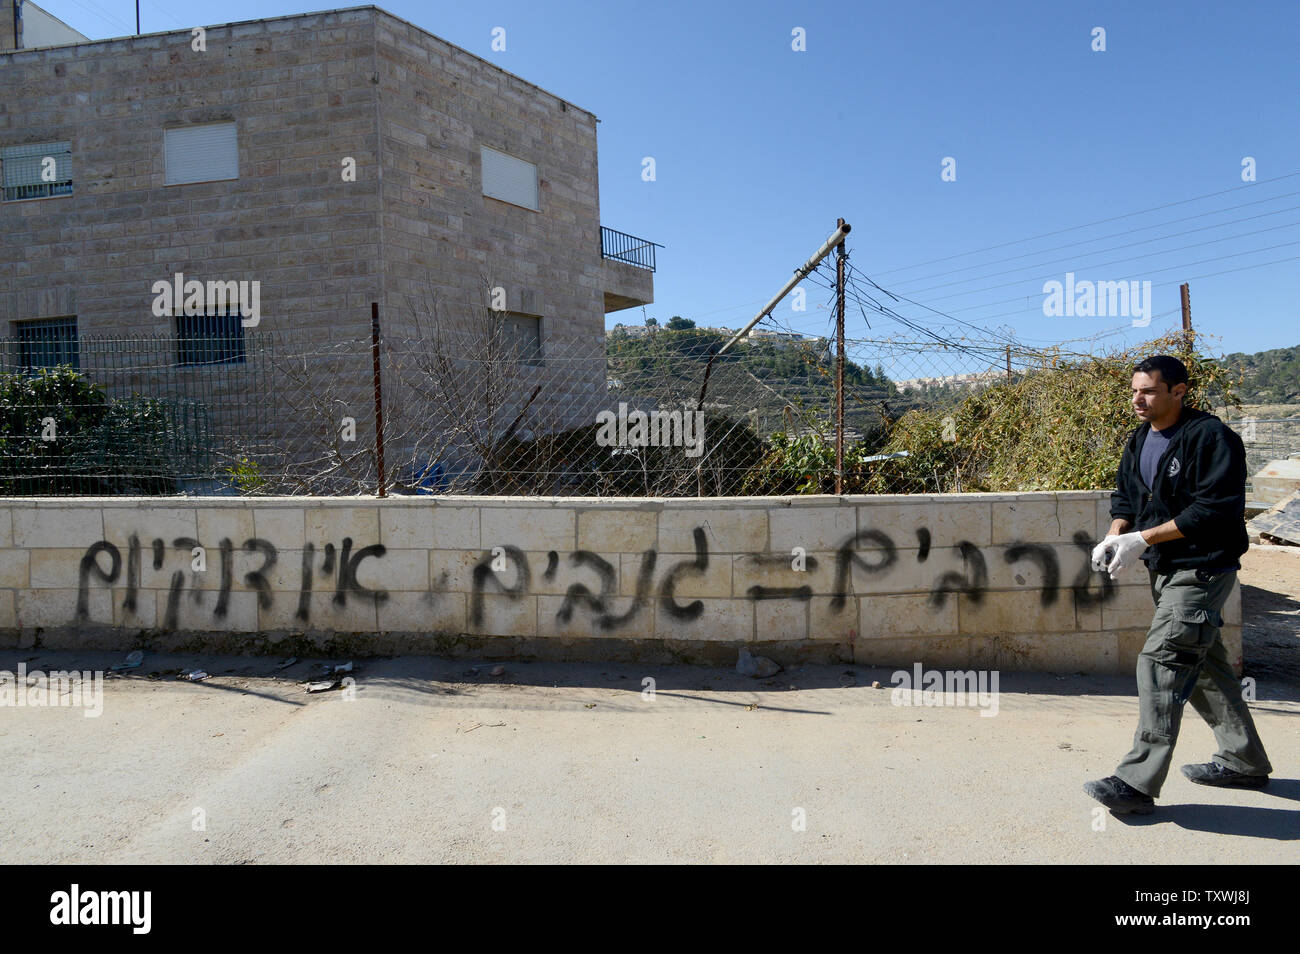 Un poliziotto israeliano passeggiate passato anti-arabi, razzista spraypainted graffiti su un muro durante un " prezzo Tag' aggressione da parte di estremisti ebrei nel quartiere Sharafat in Gerusalemme, Israele, 19 febbraio 2014. Il graffiti legge 'No coesistenza' e 'arabi = ladri". Più di 30 veicoli arabi avevano i loro pneumatici tagliati durante la notte durante il "prezzo Tag' attacchi che sono considerati una risposta diretta da lontano a destra israeliani ai colloqui di pace con i palestinesi. UPI/Debbie Hill Foto Stock